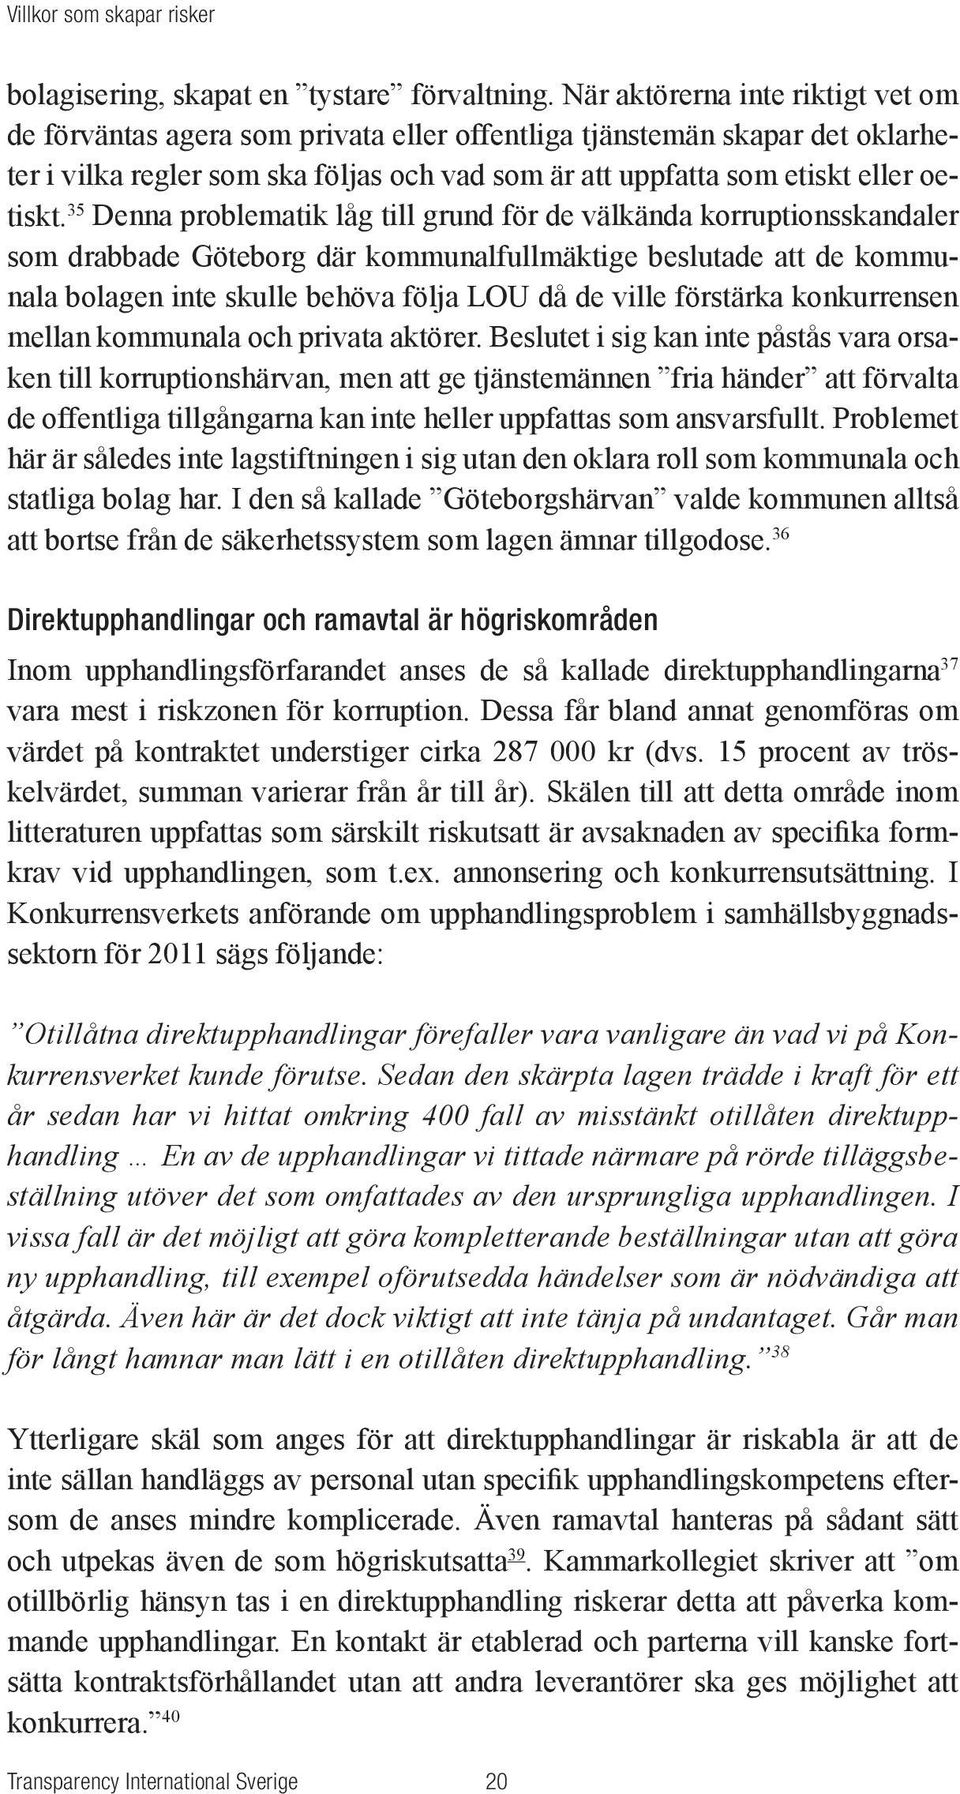 35 Denna problematik låg till grund för de välkända korruptionsskandaler som drabbade Göteborg där kommunalfullmäktige beslutade att de kommunala bolagen inte skulle behöva följa LOU då de ville